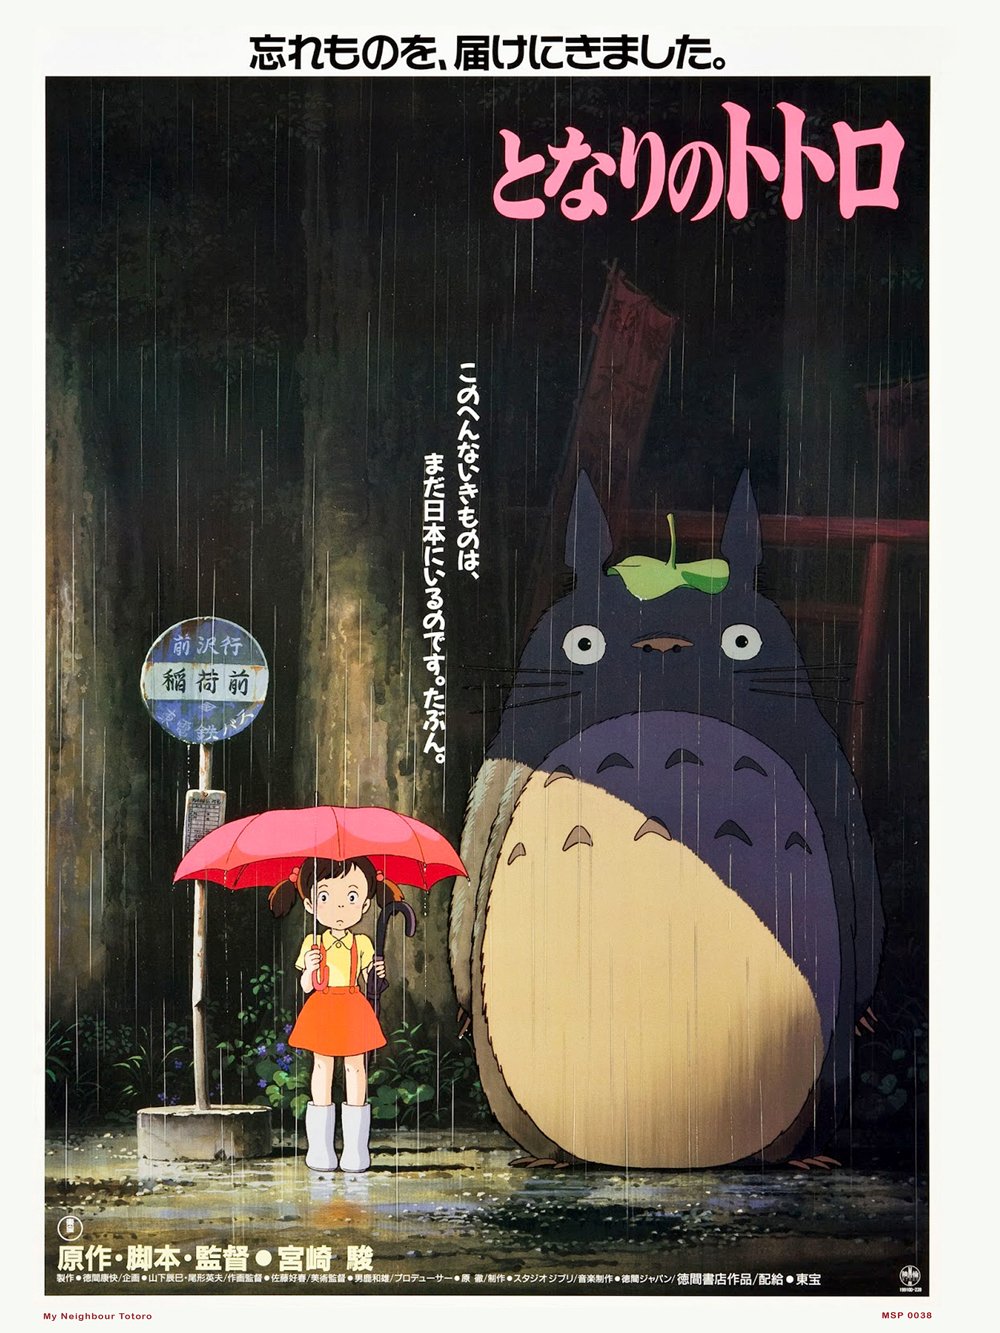 Mua Sách Studio Ghibli: 100 Collectible Postcards Giá Rẻ